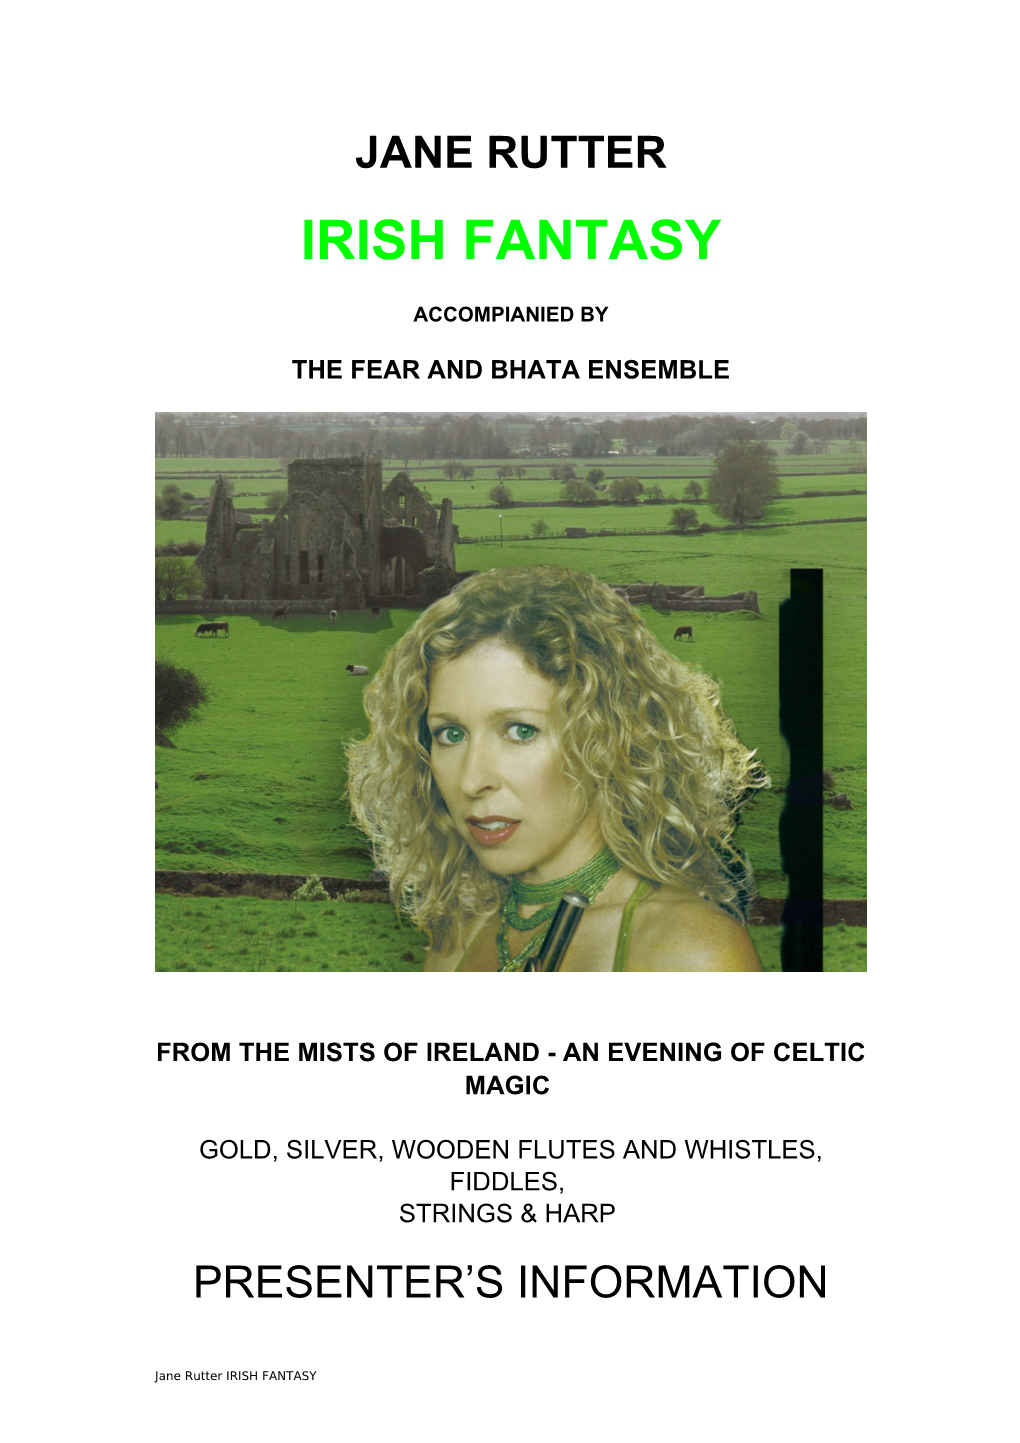 Jane Rutter "An Irish Fantasy"